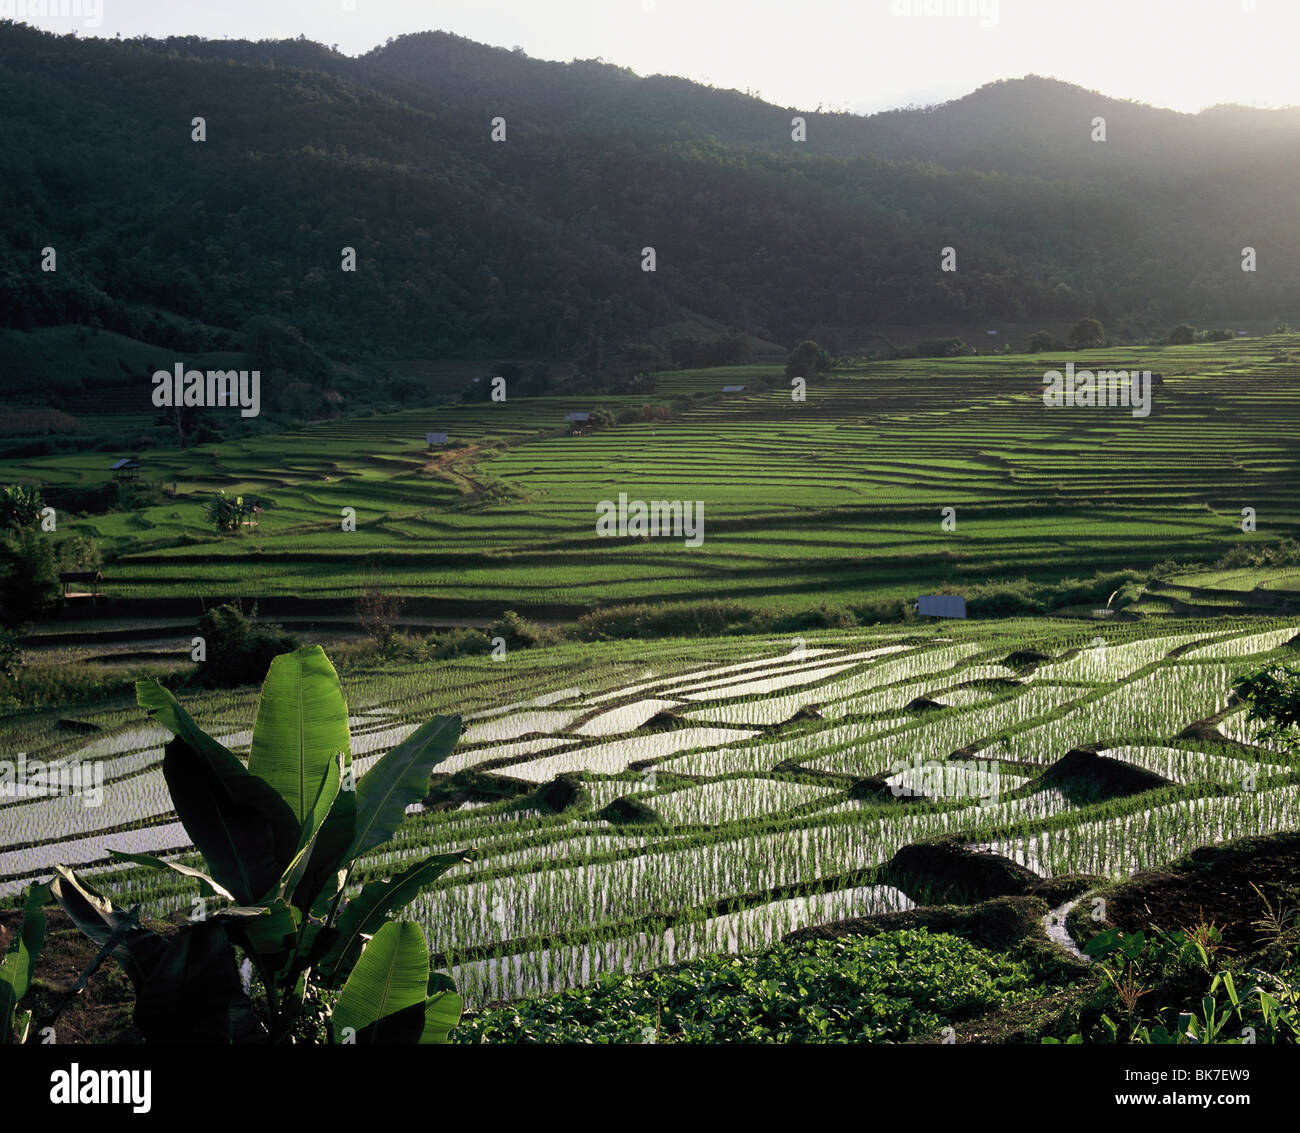 Les rizières en terrasses, Doi Inthanon, Chiang Mai, Thaïlande, Asie du Sud-Est, Asie Banque D'Images